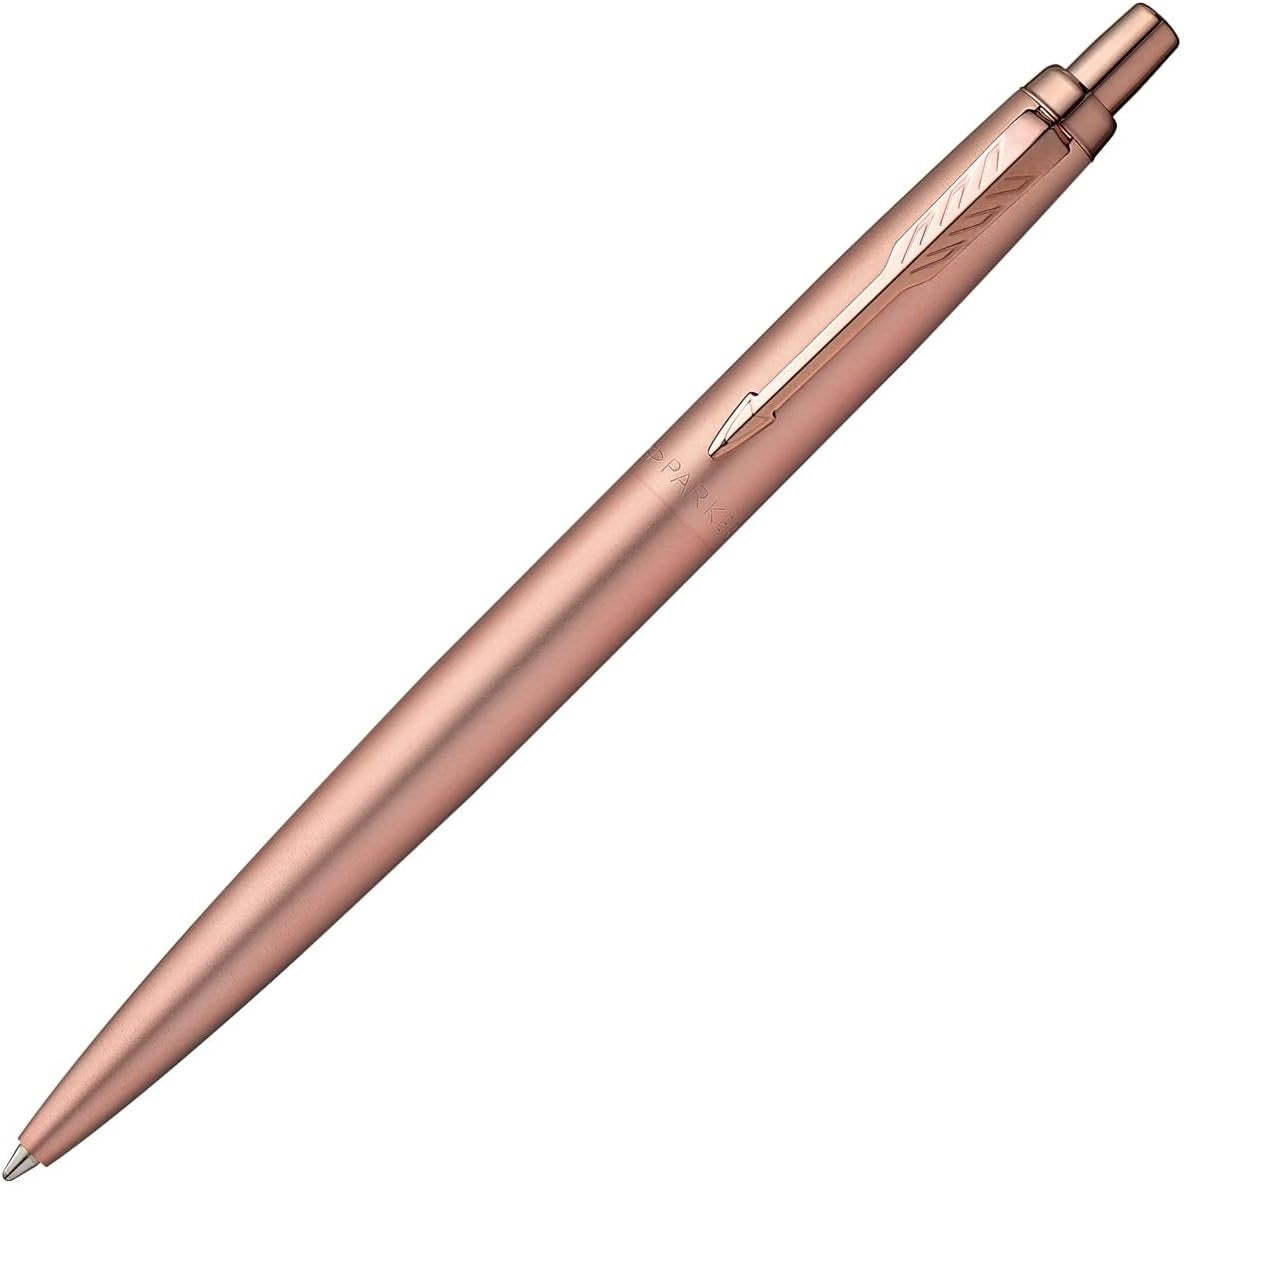 Parker Jotter XL Monochrome Pink Gold Pen - Special Edition